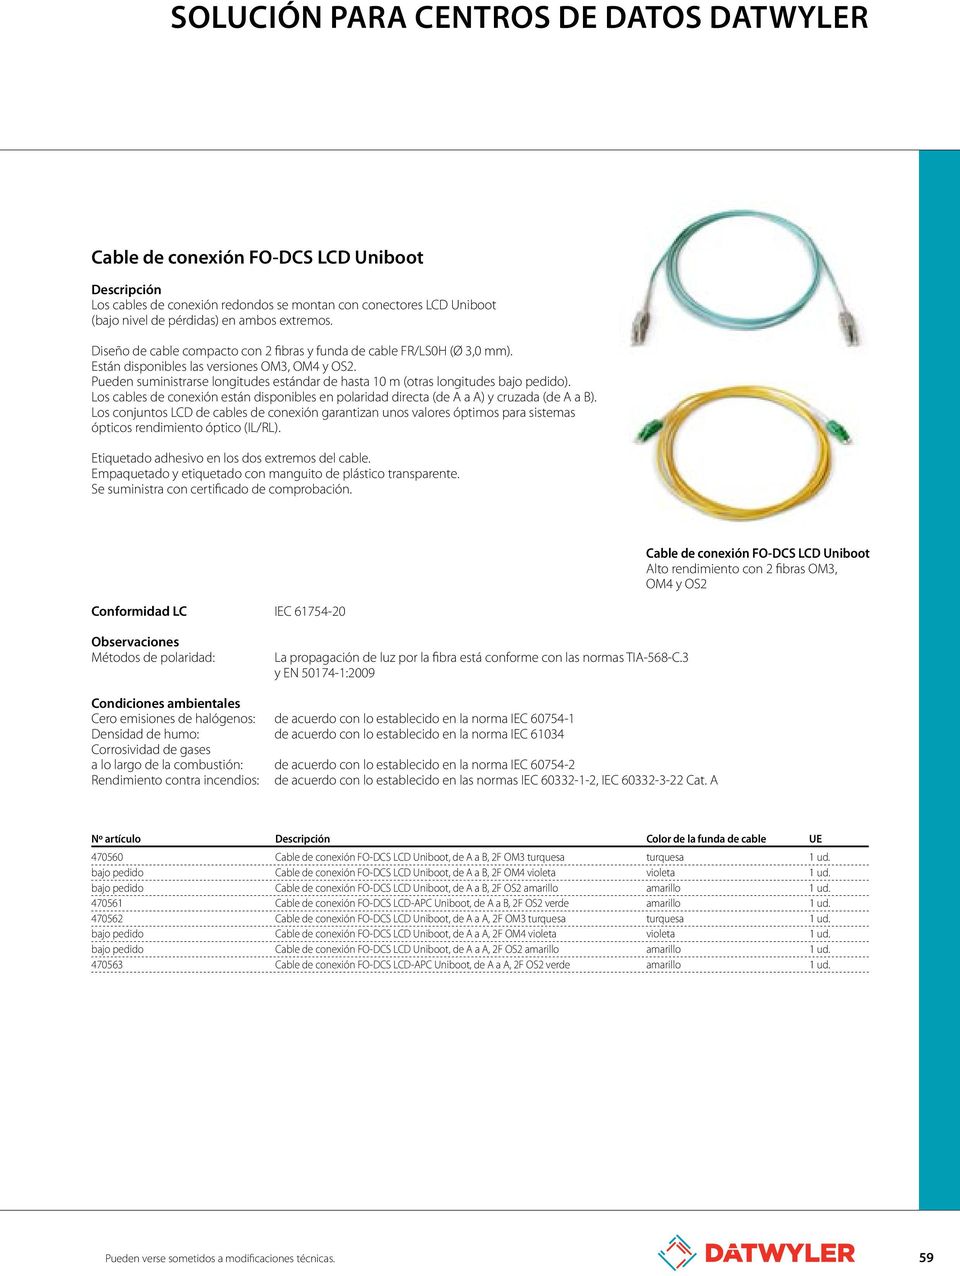 Pueden suministrarse longitudes estándar de hasta 10 m (otras longitudes bajo pedido). Los cables de conexión están disponibles en polaridad directa (de A a A) y cruzada (de A a B).